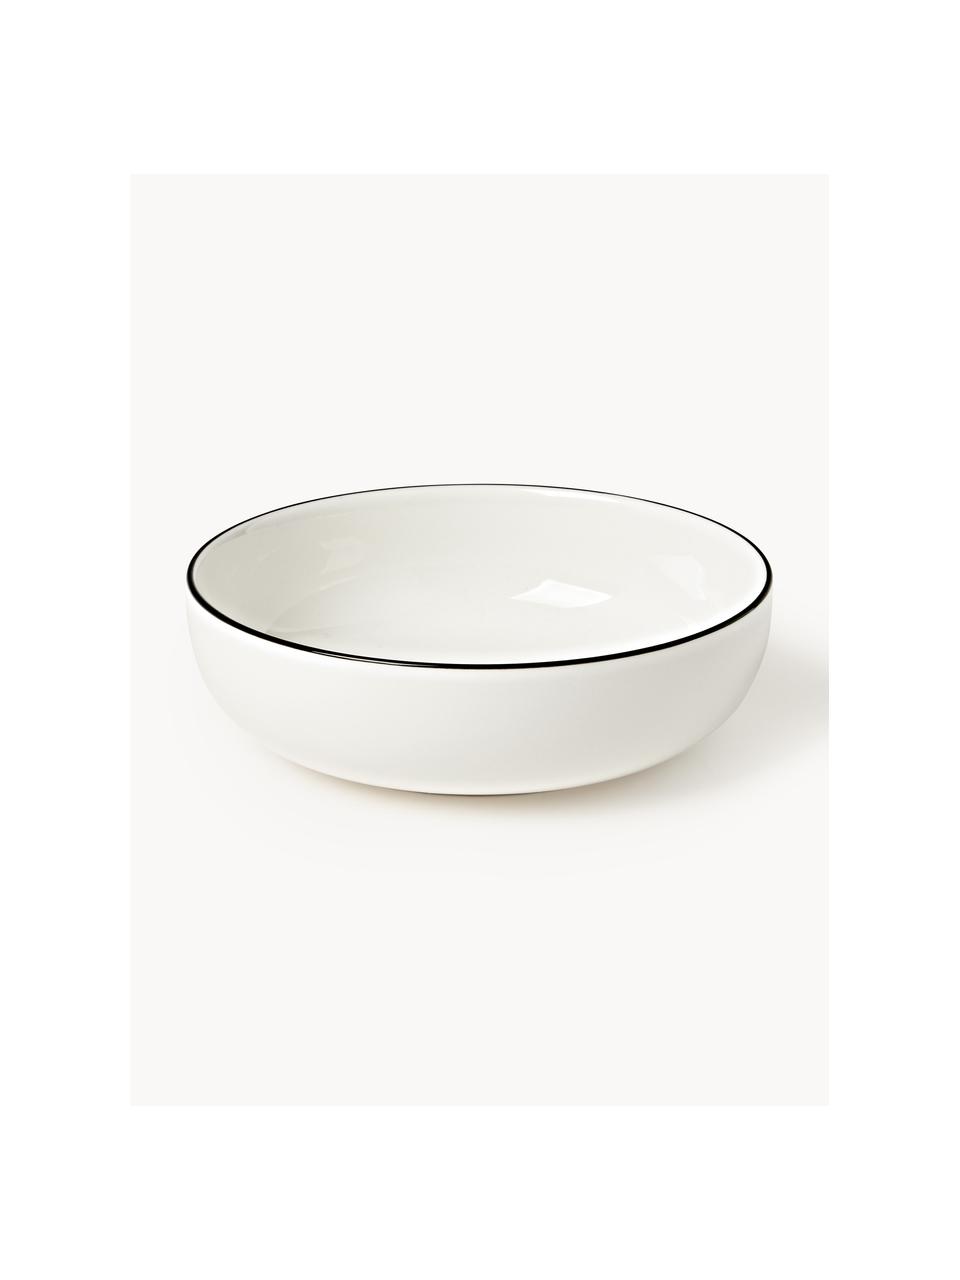 Malé porcelánové hluboké talíře Facile, 2 ks, Vysoce kvalitní tvrdý porcelán (cca 50 % kaolinu, 25 % křemene a 25 % živce), Tlumeně bílá, Ø 18 cm, V 6 cm